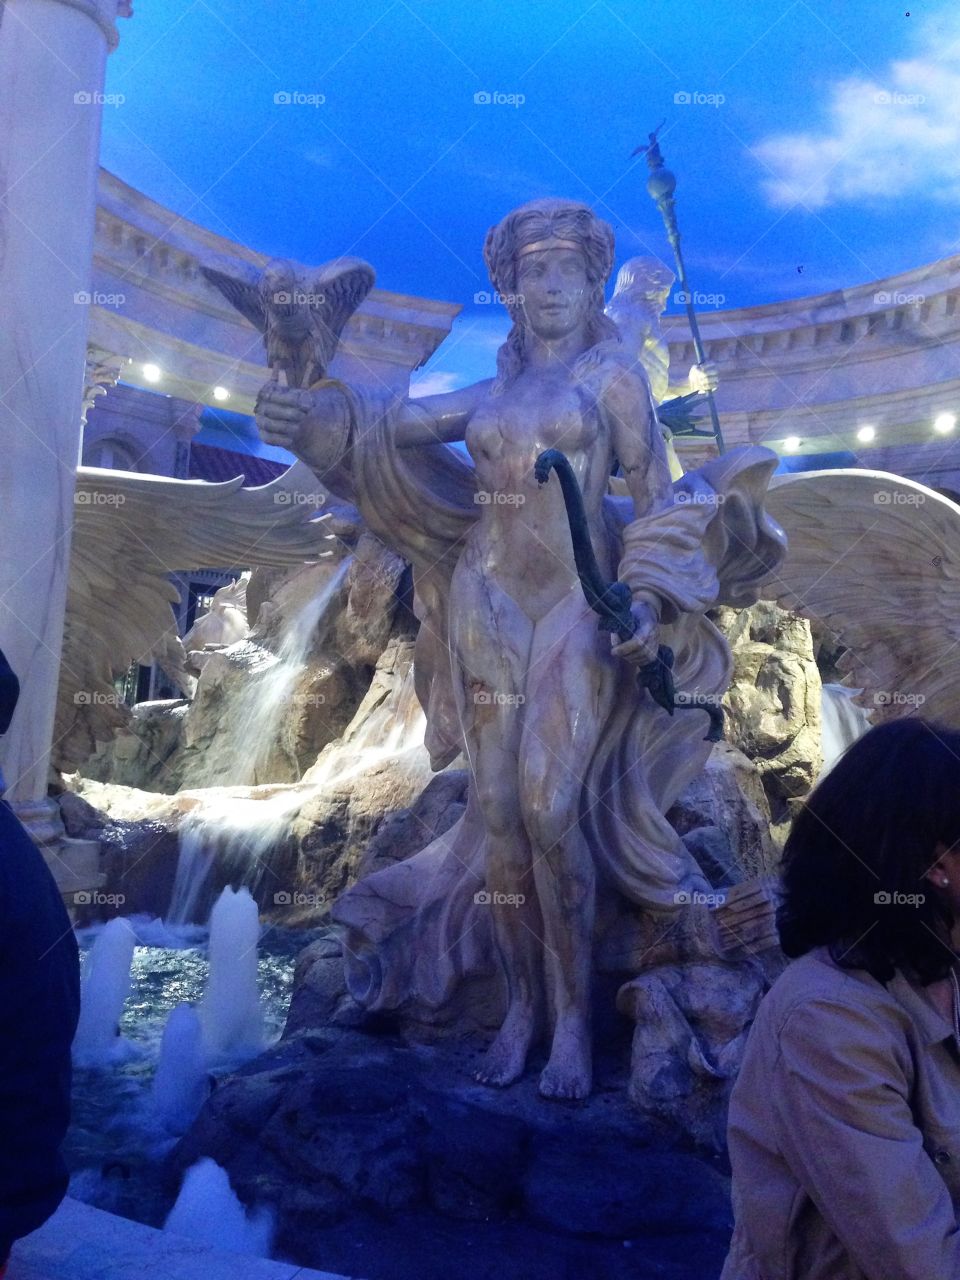 Caesar's palace fountain Las Vegas 